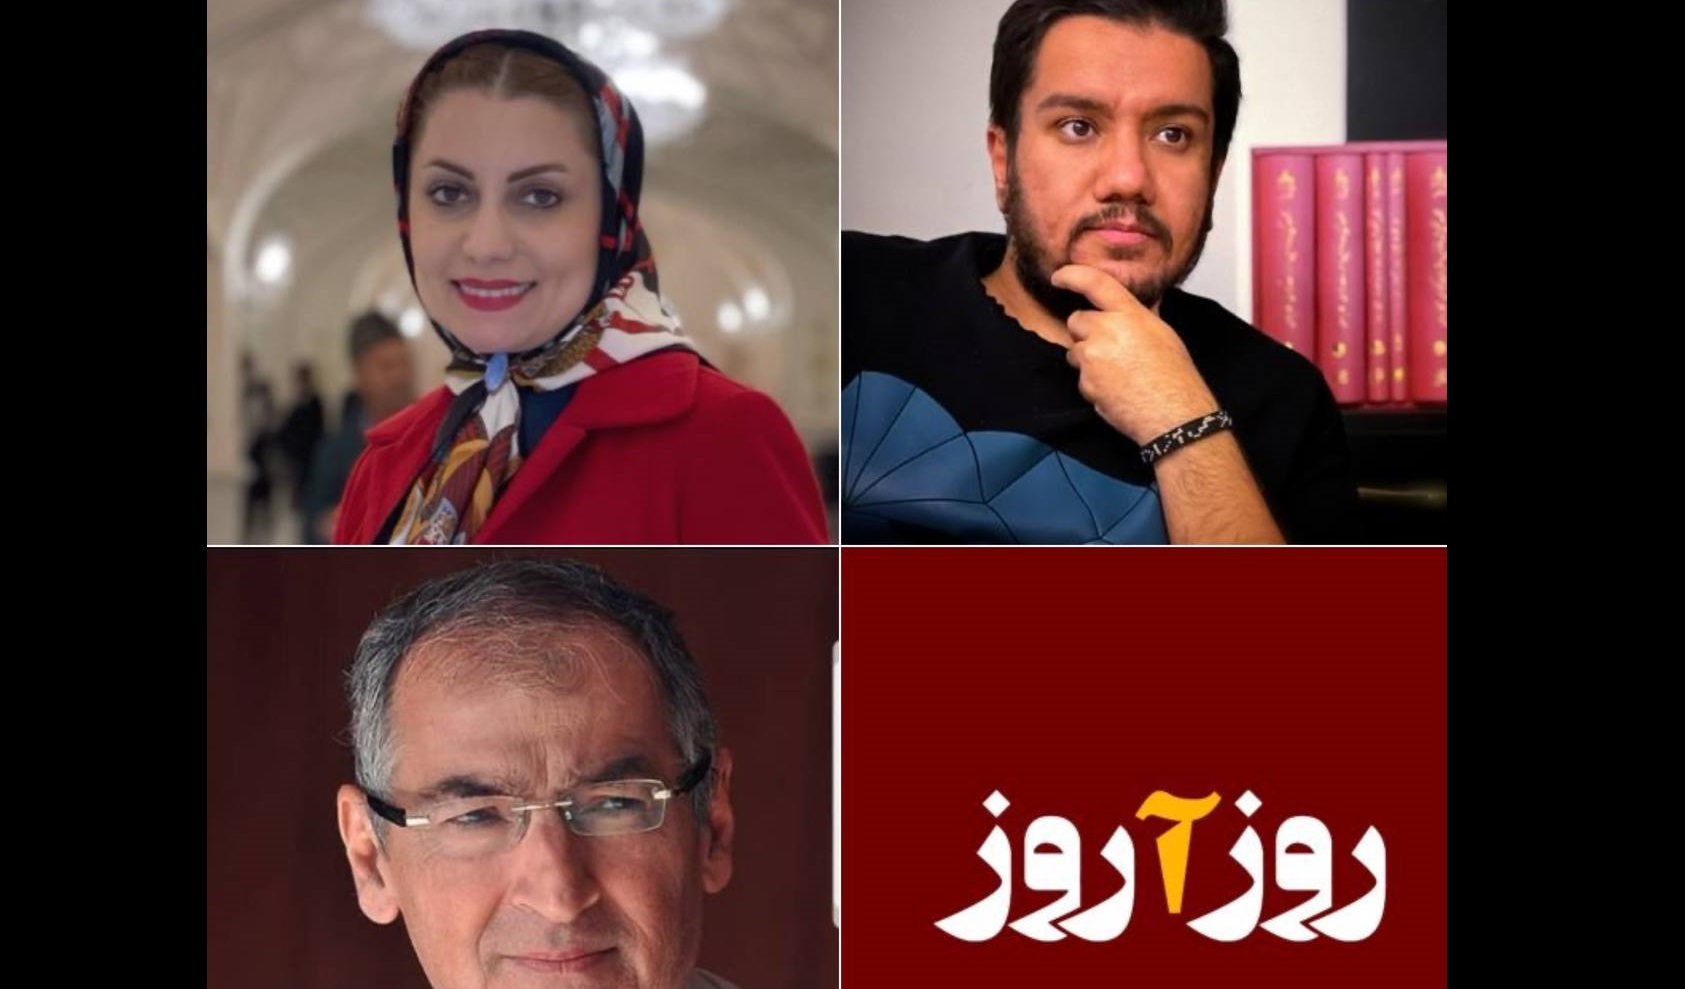 دادستان تهران، علیه یک کانال تلگرامی و ۳ فرد دیگر اعلام جرم کرد